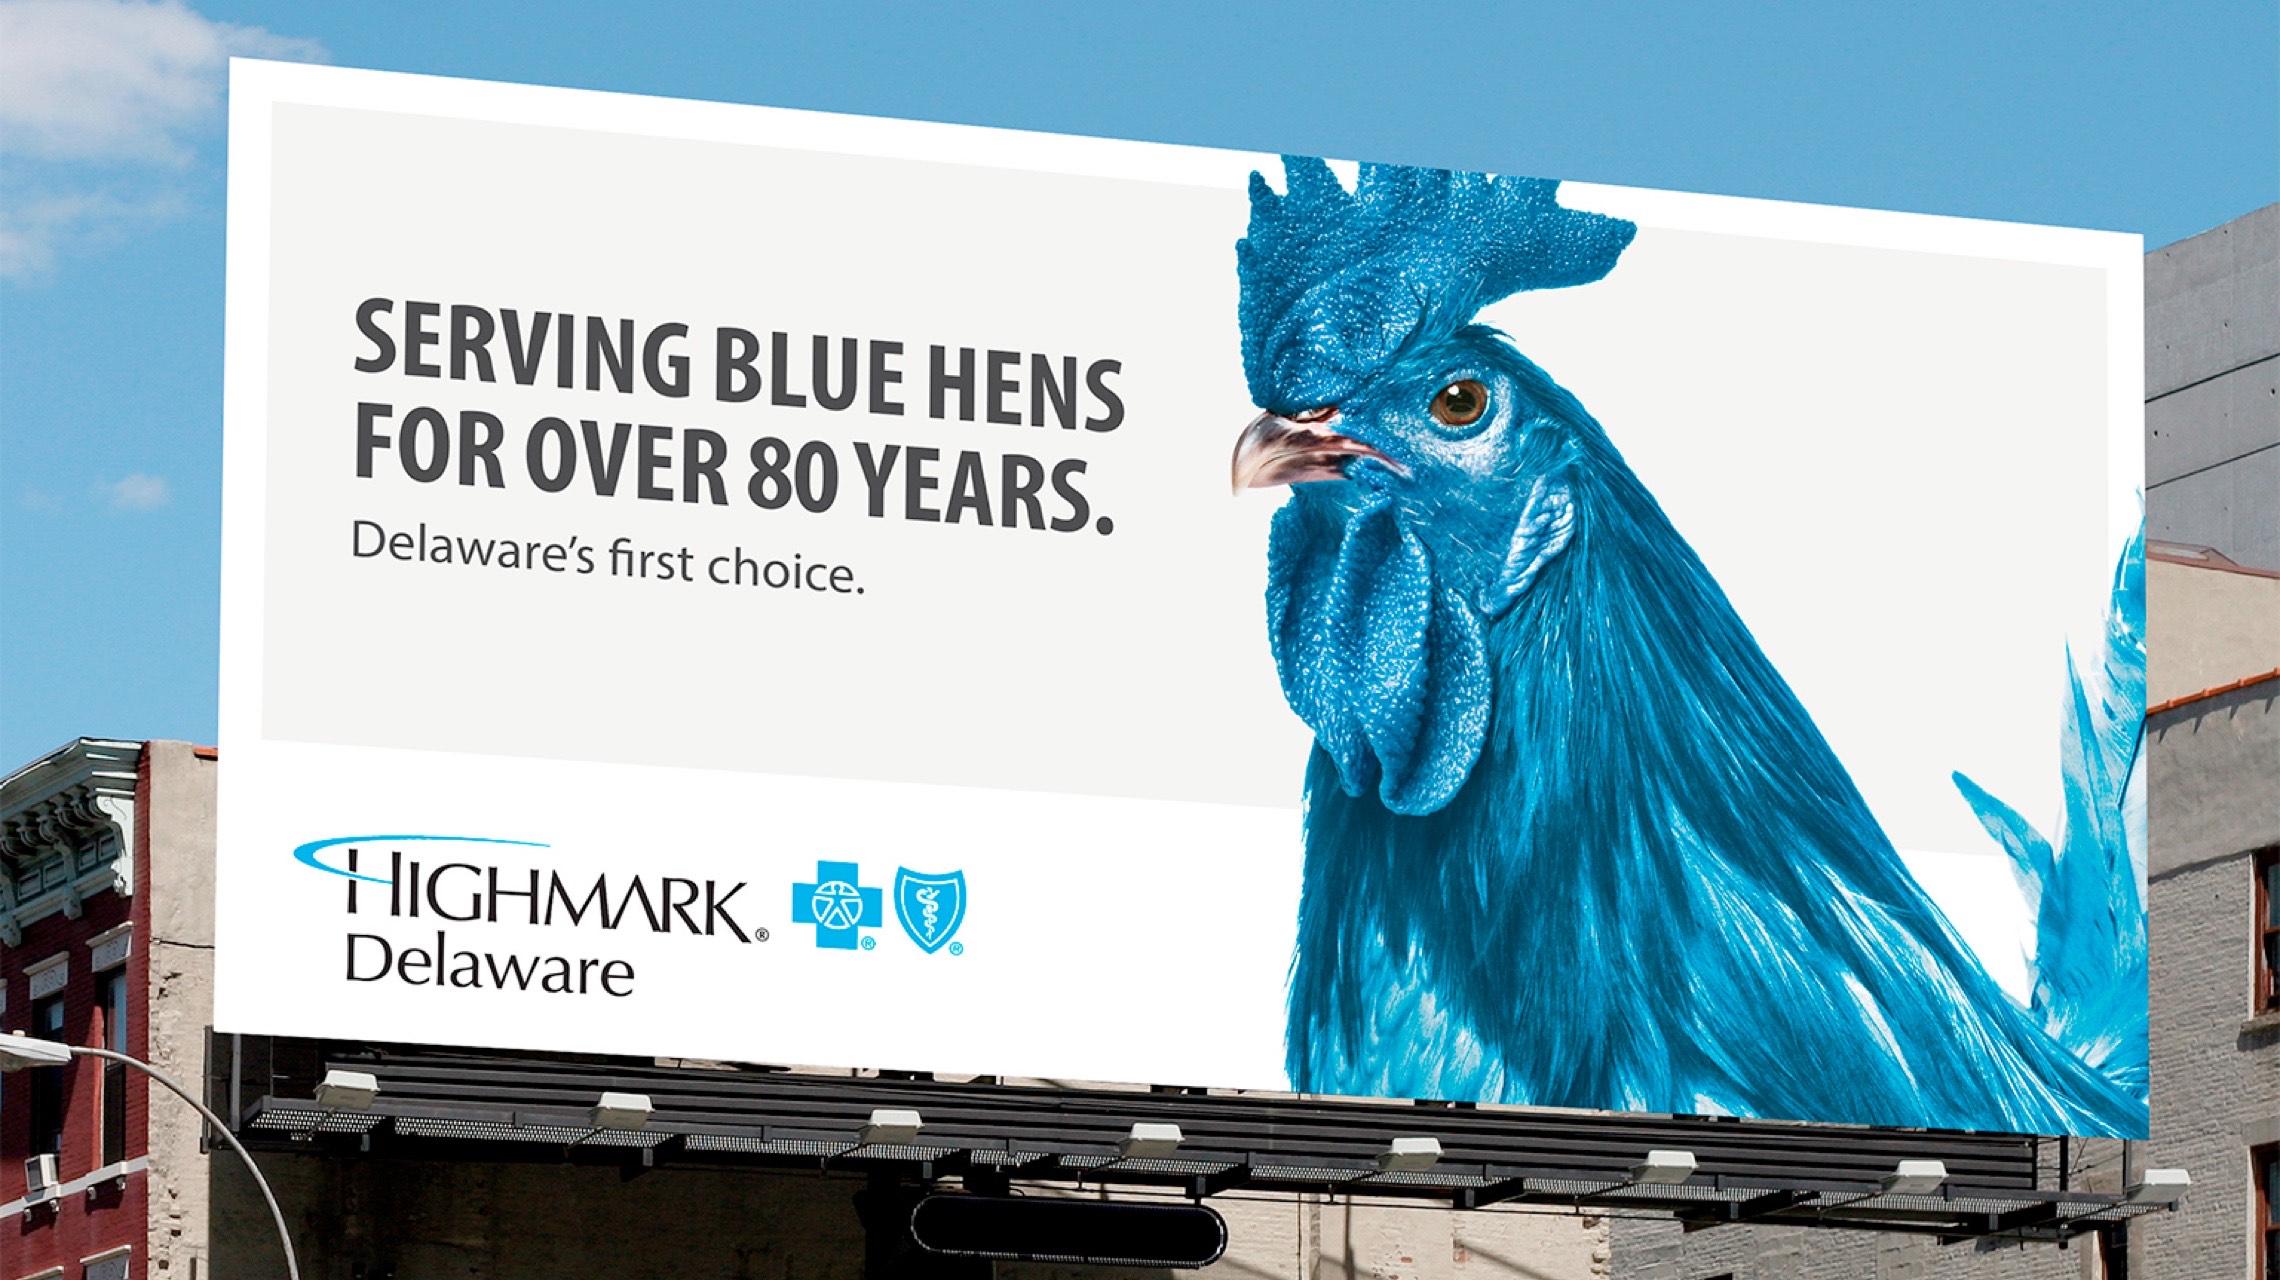 Photograph of a blue hen billboard.